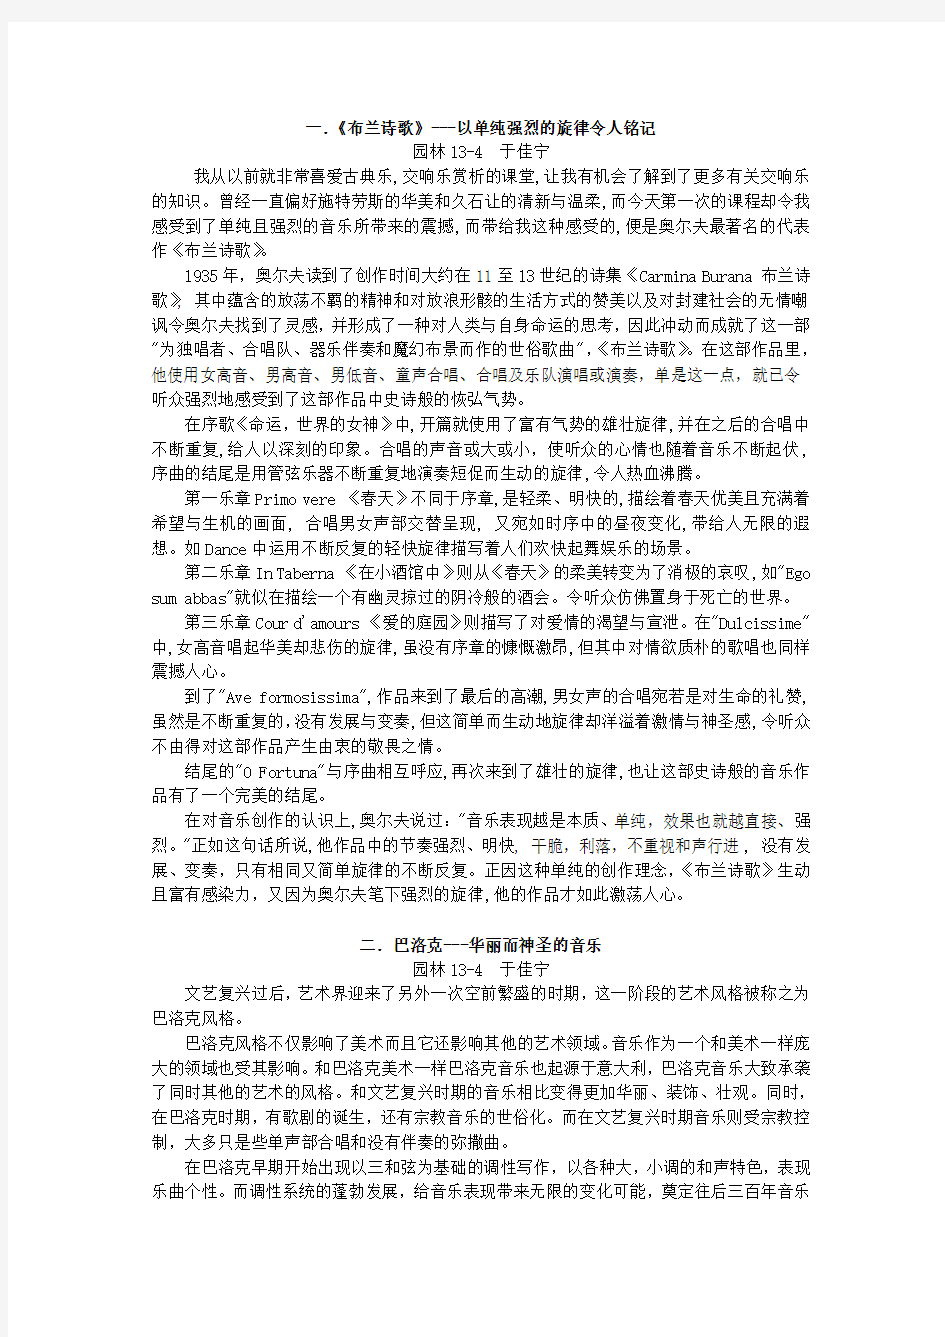 北京林业大学 巩武天 交响乐赏析论文